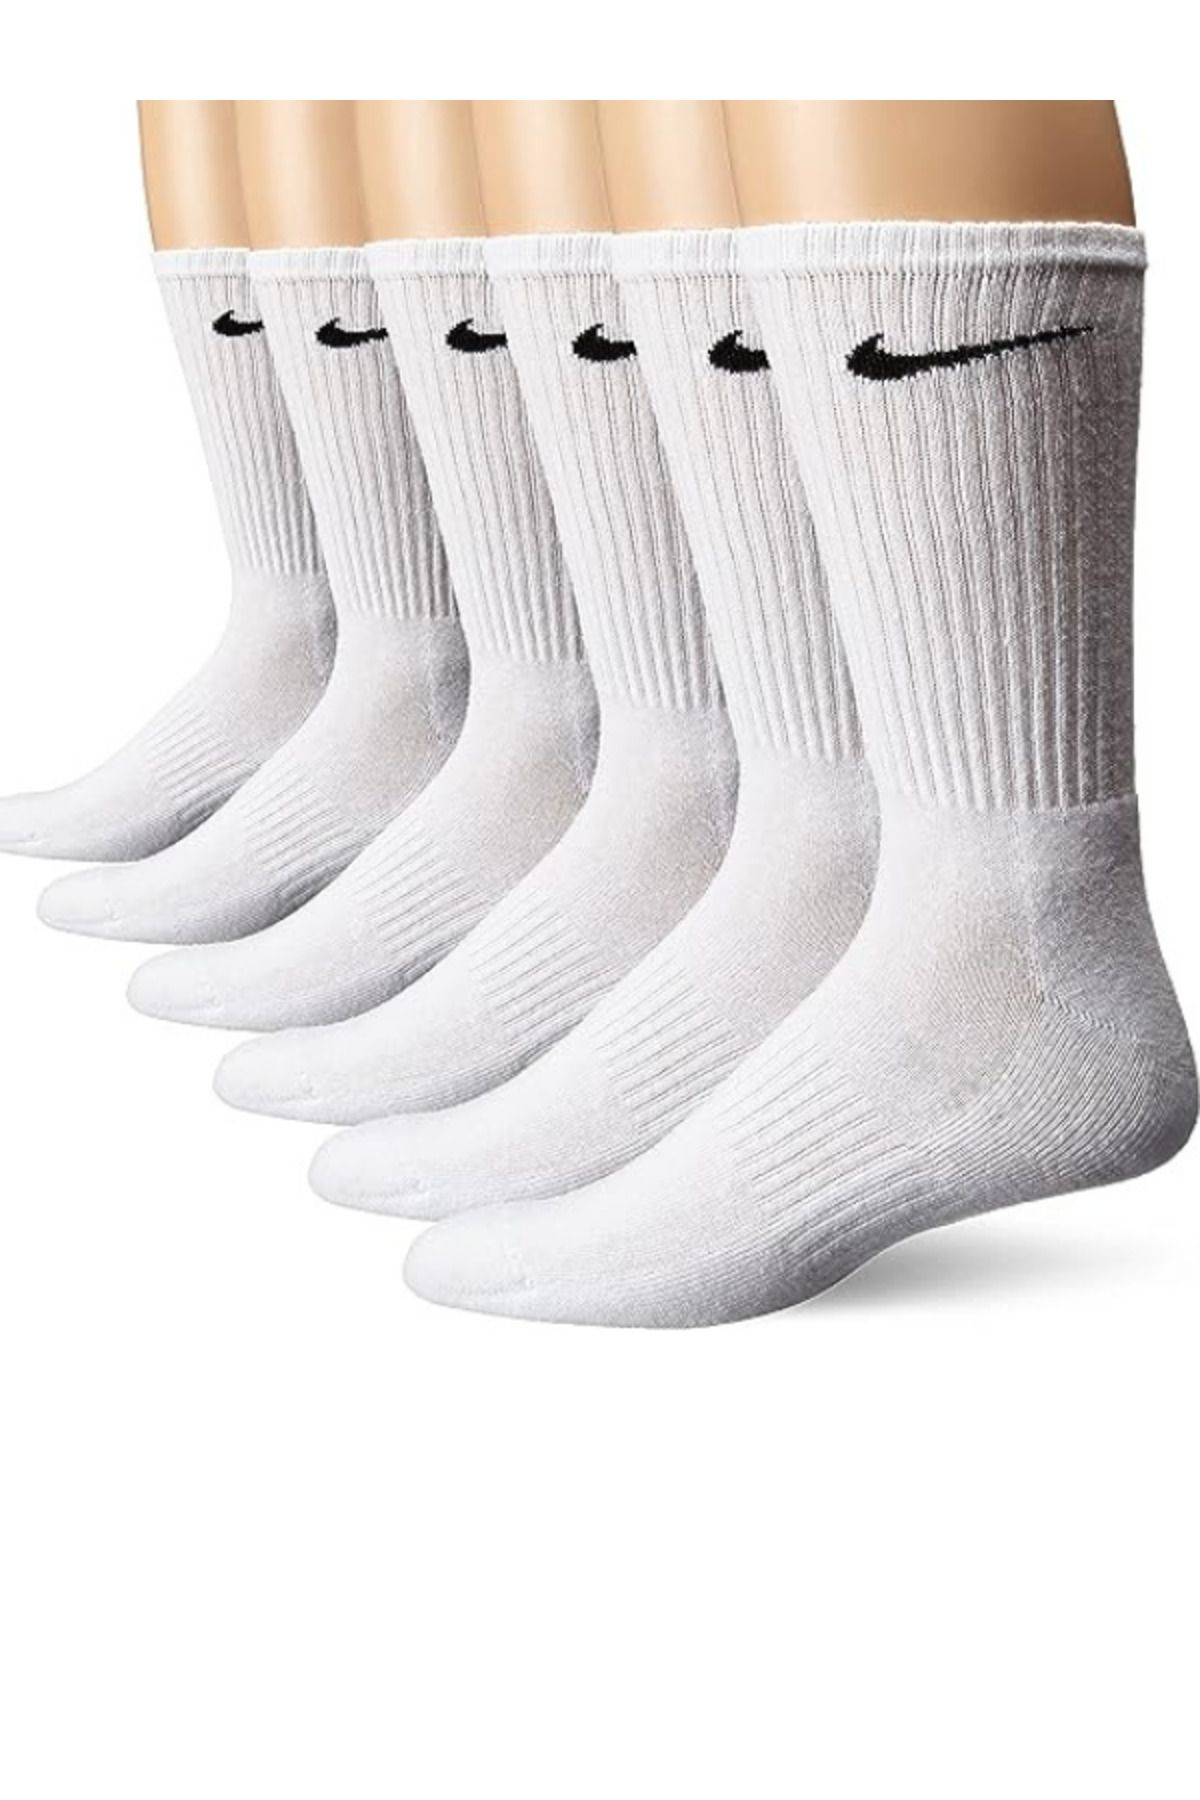 Socks Sirius 6 Çift Unisex Penye Ithal Dikişsiz Antrenman Futbol Basketbol Koşu Yürüyüş Tenis Spor Çorap Seti